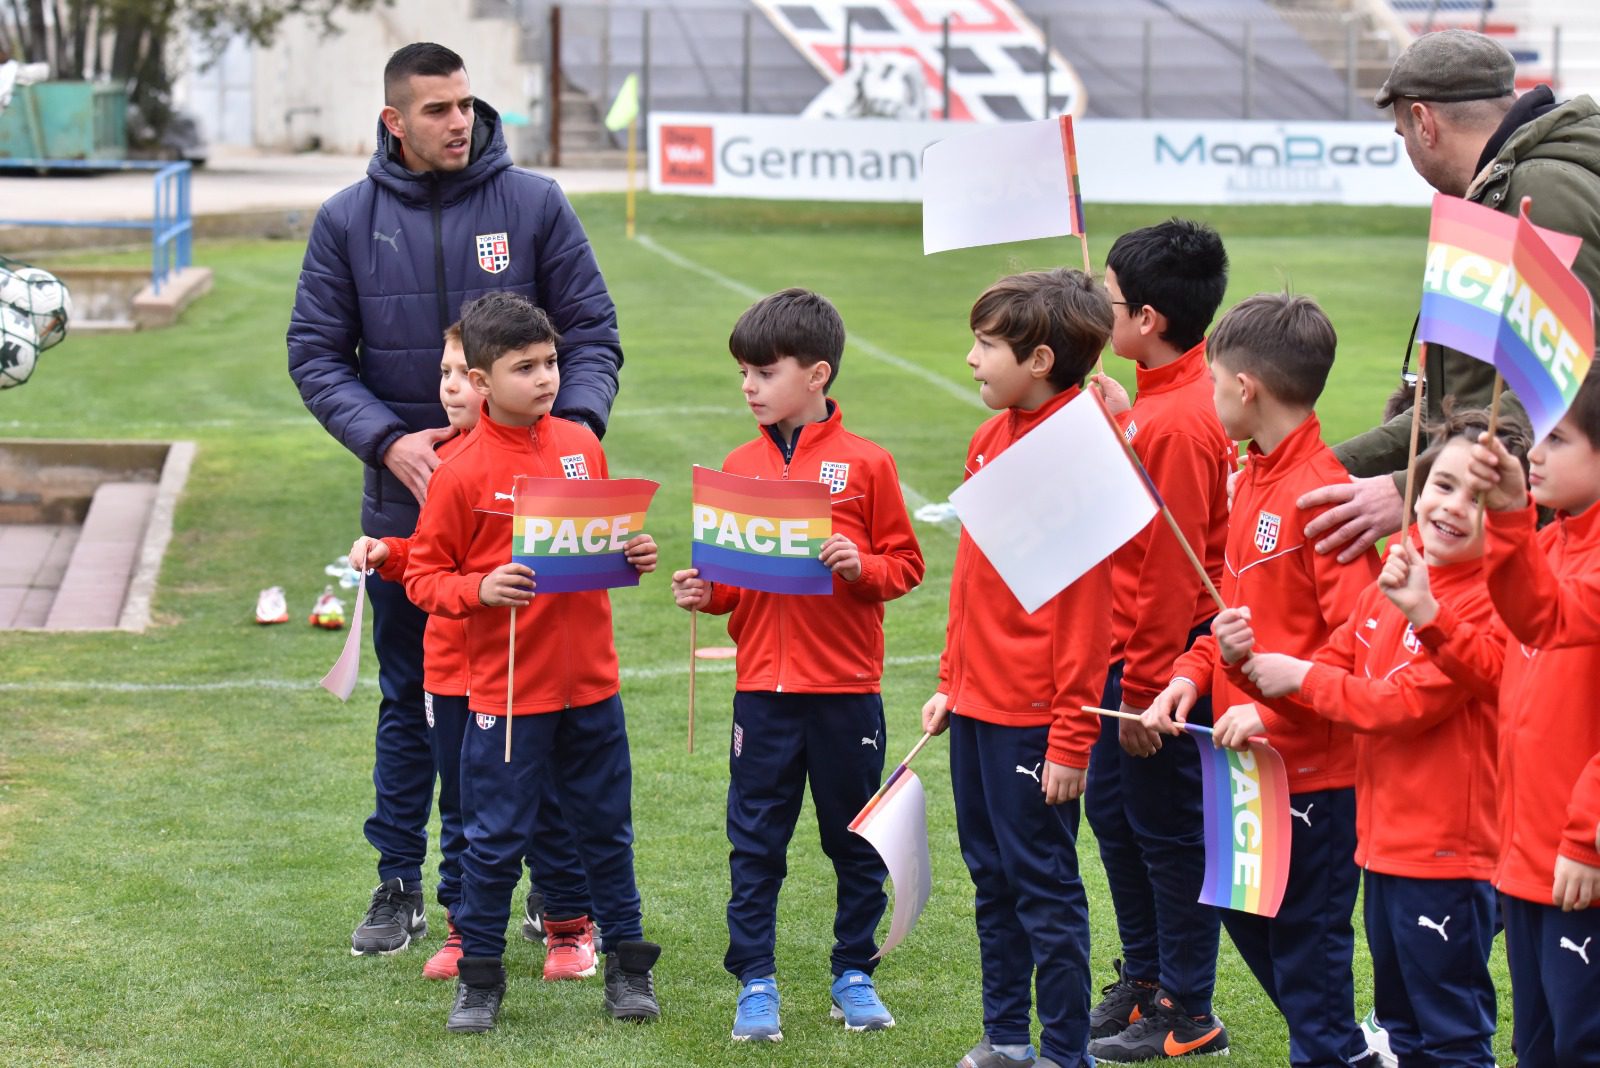 I bambini della scuola calcio con bandiere della pace, foto di Alessandro Sanna